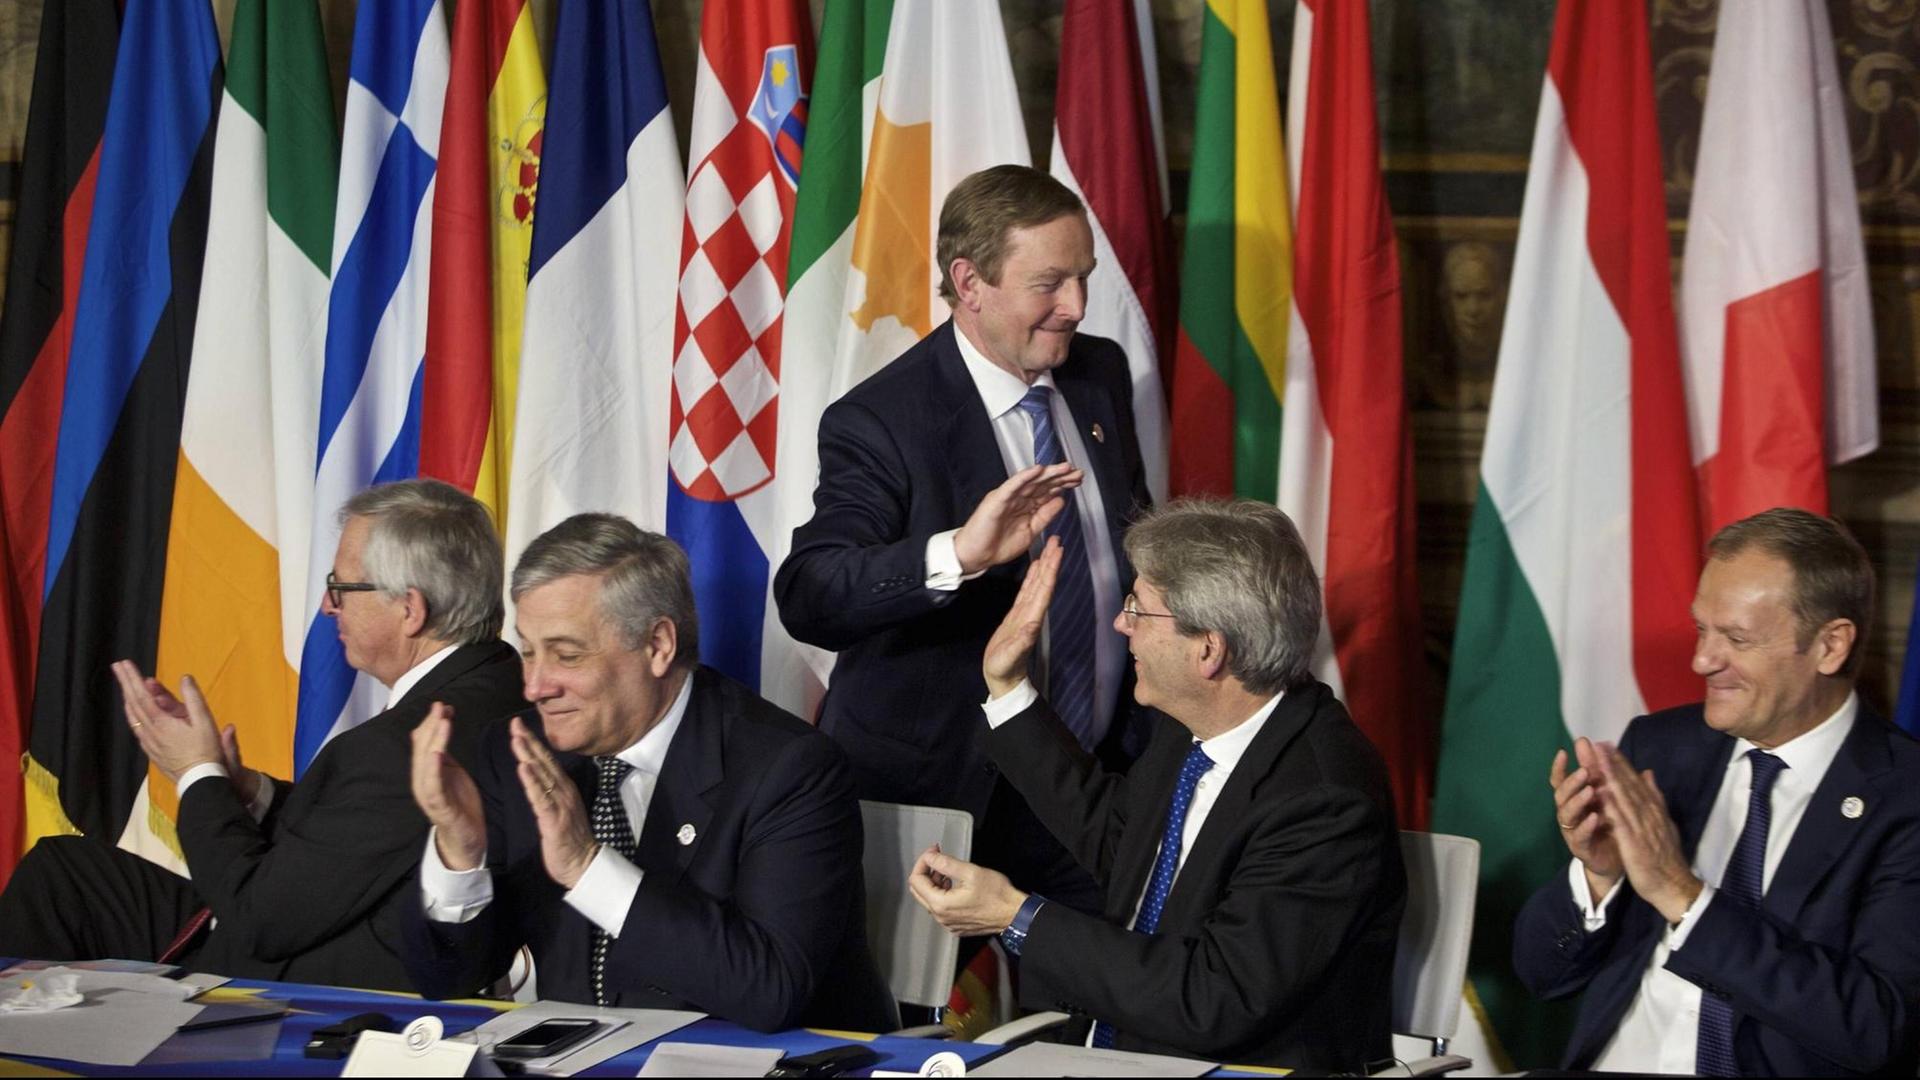 Der irische Premierminister Enda Kenny (m.) wird vom italienischen Premierminister Paolo Gentiloni (2. v.r.) abgeklatscht, nachdem er die Erklärung von Rome zum 60. EU-Jubiläum unterzeichnet hat.